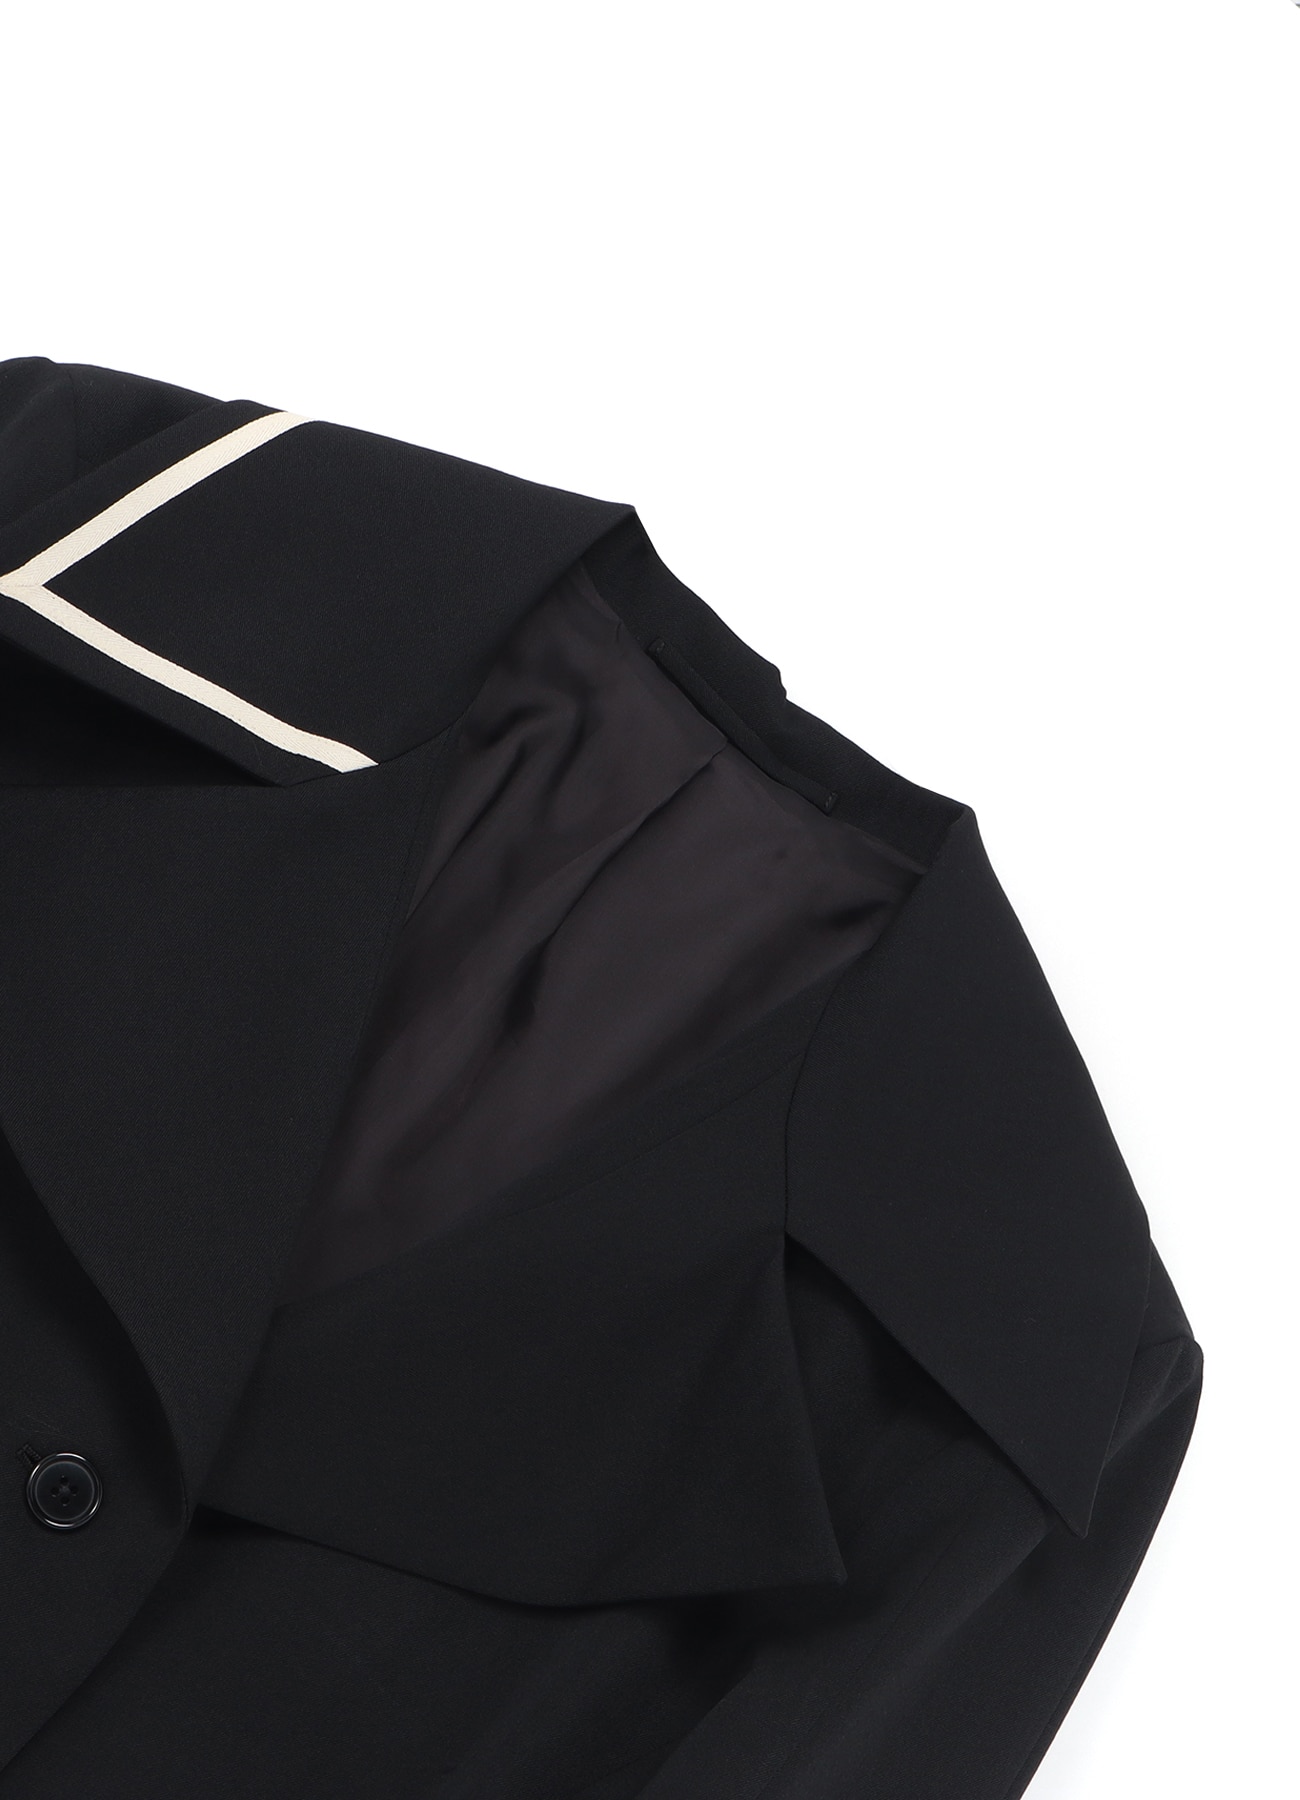 WILDSIDE × Kie Einzelganger Wool Gabardine Jacket B(FREE SIZE BLACK ...